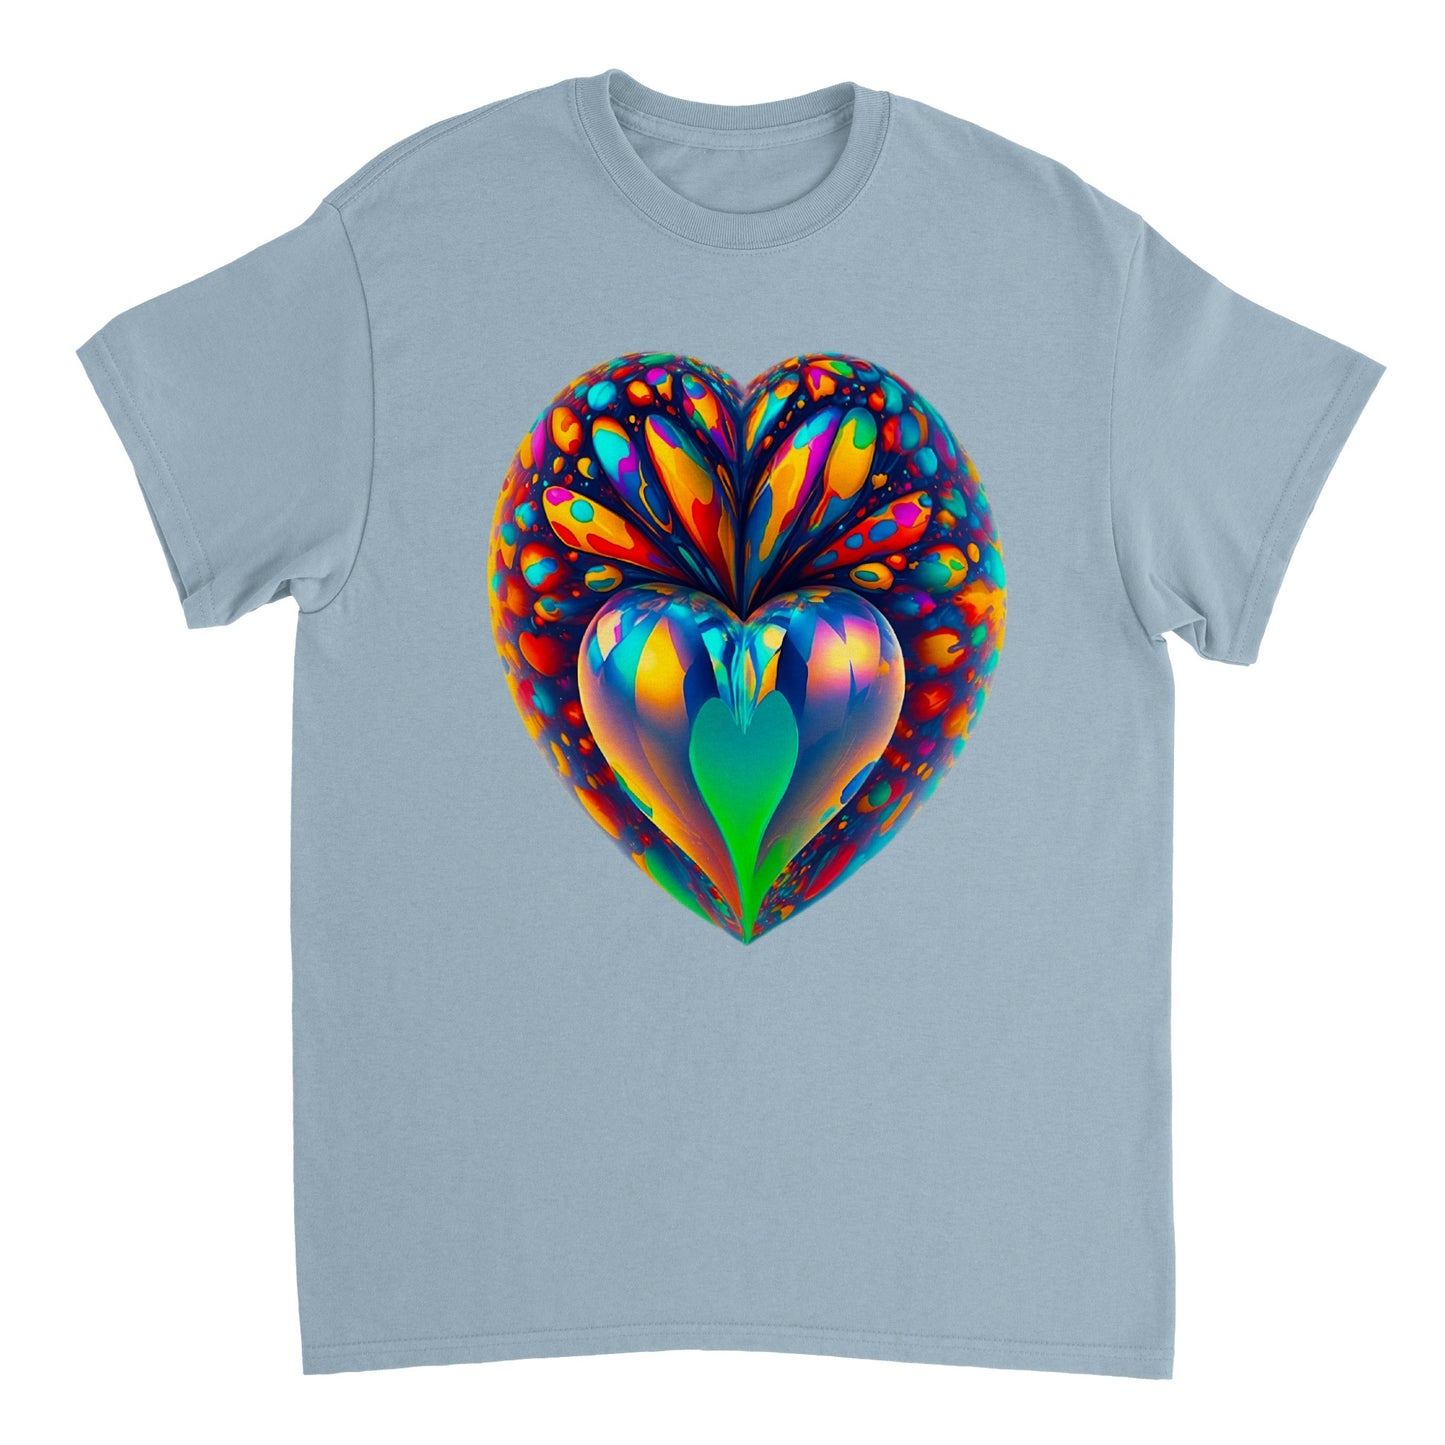 Love Heart - Heavyweight Unisex Crewneck T-shirt 91